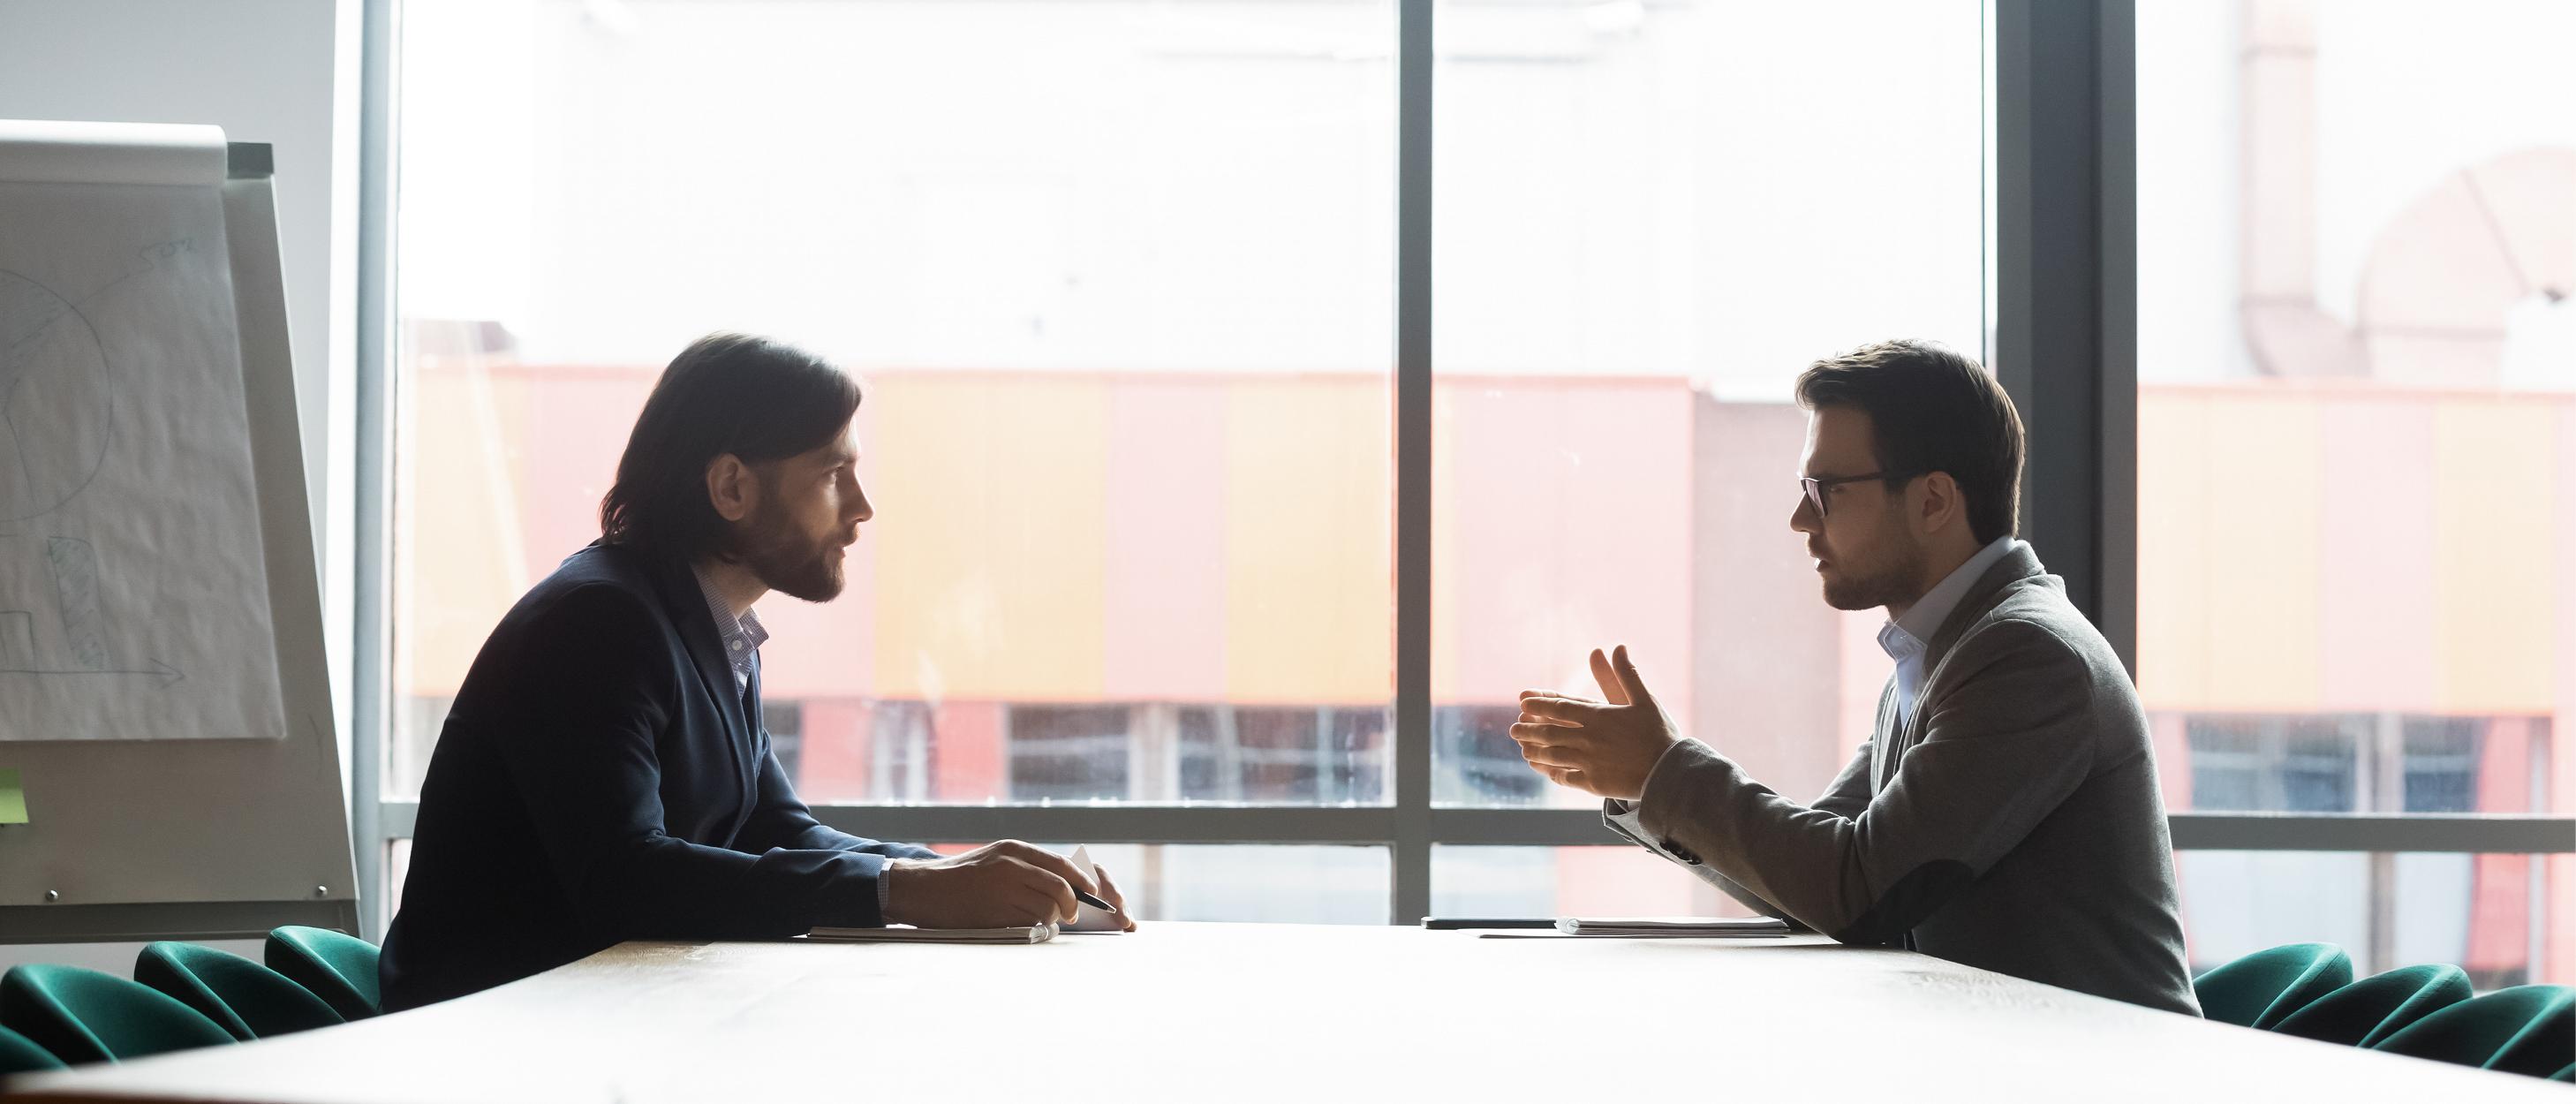 Två män pratar med varandra under ett jobbmöte